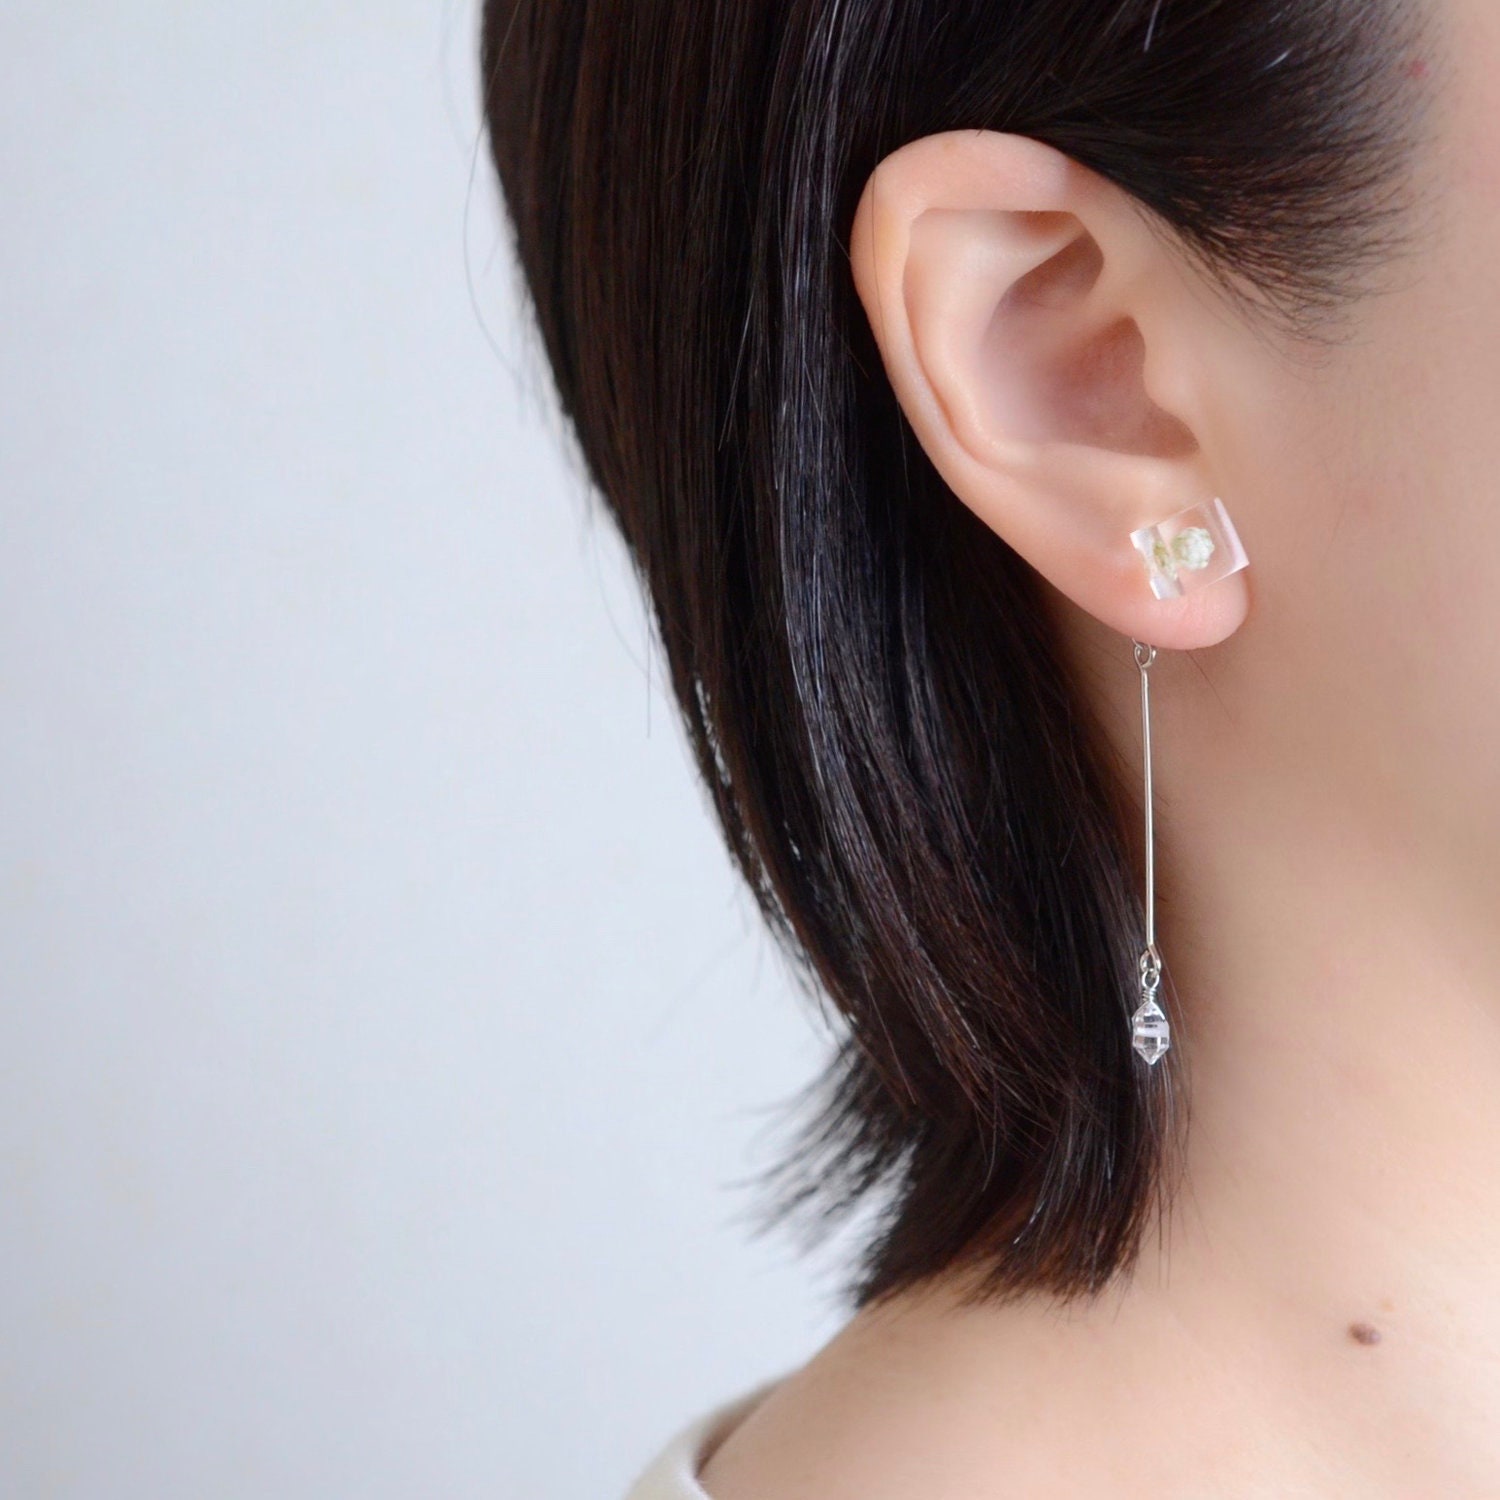 Rice flower earrings Herkimer-diamond earrings stud | Etsy